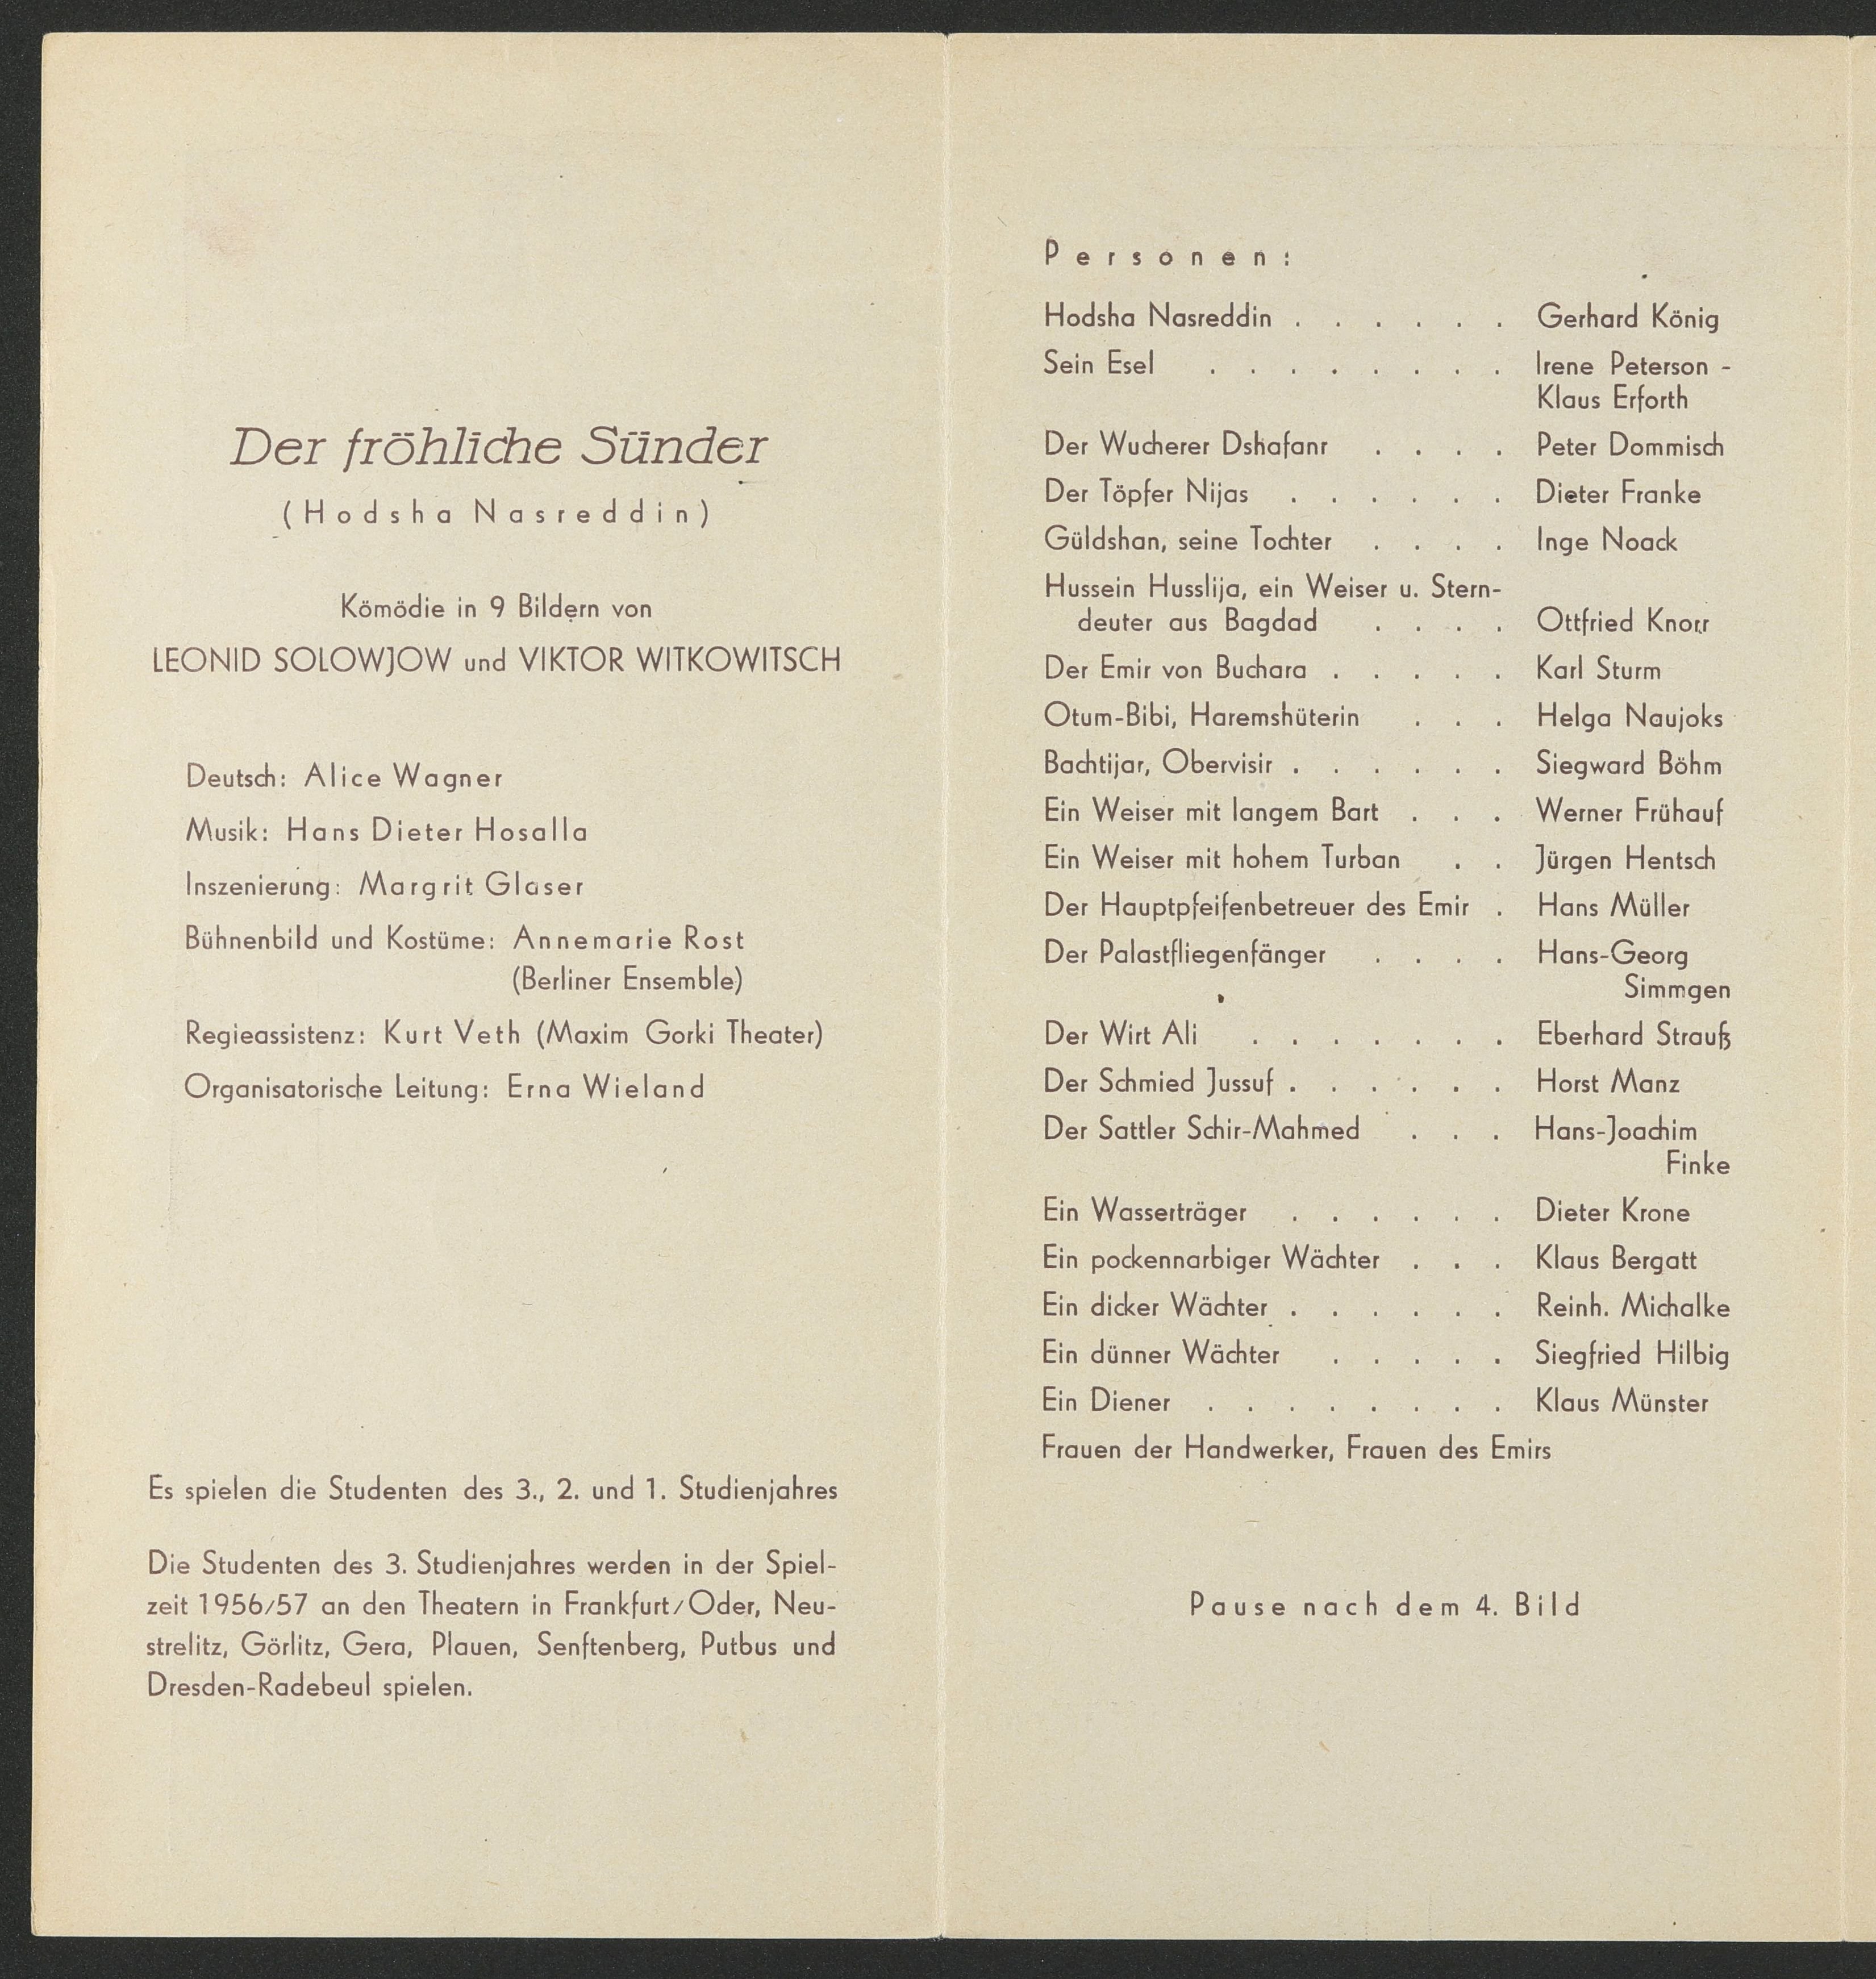 Programmheft zu "Der fröhliche Sünder" in Karl-Marx-Stadt 1956 (Hochschule für Schauspielkunst Ernst Busch Berlin RR-F)